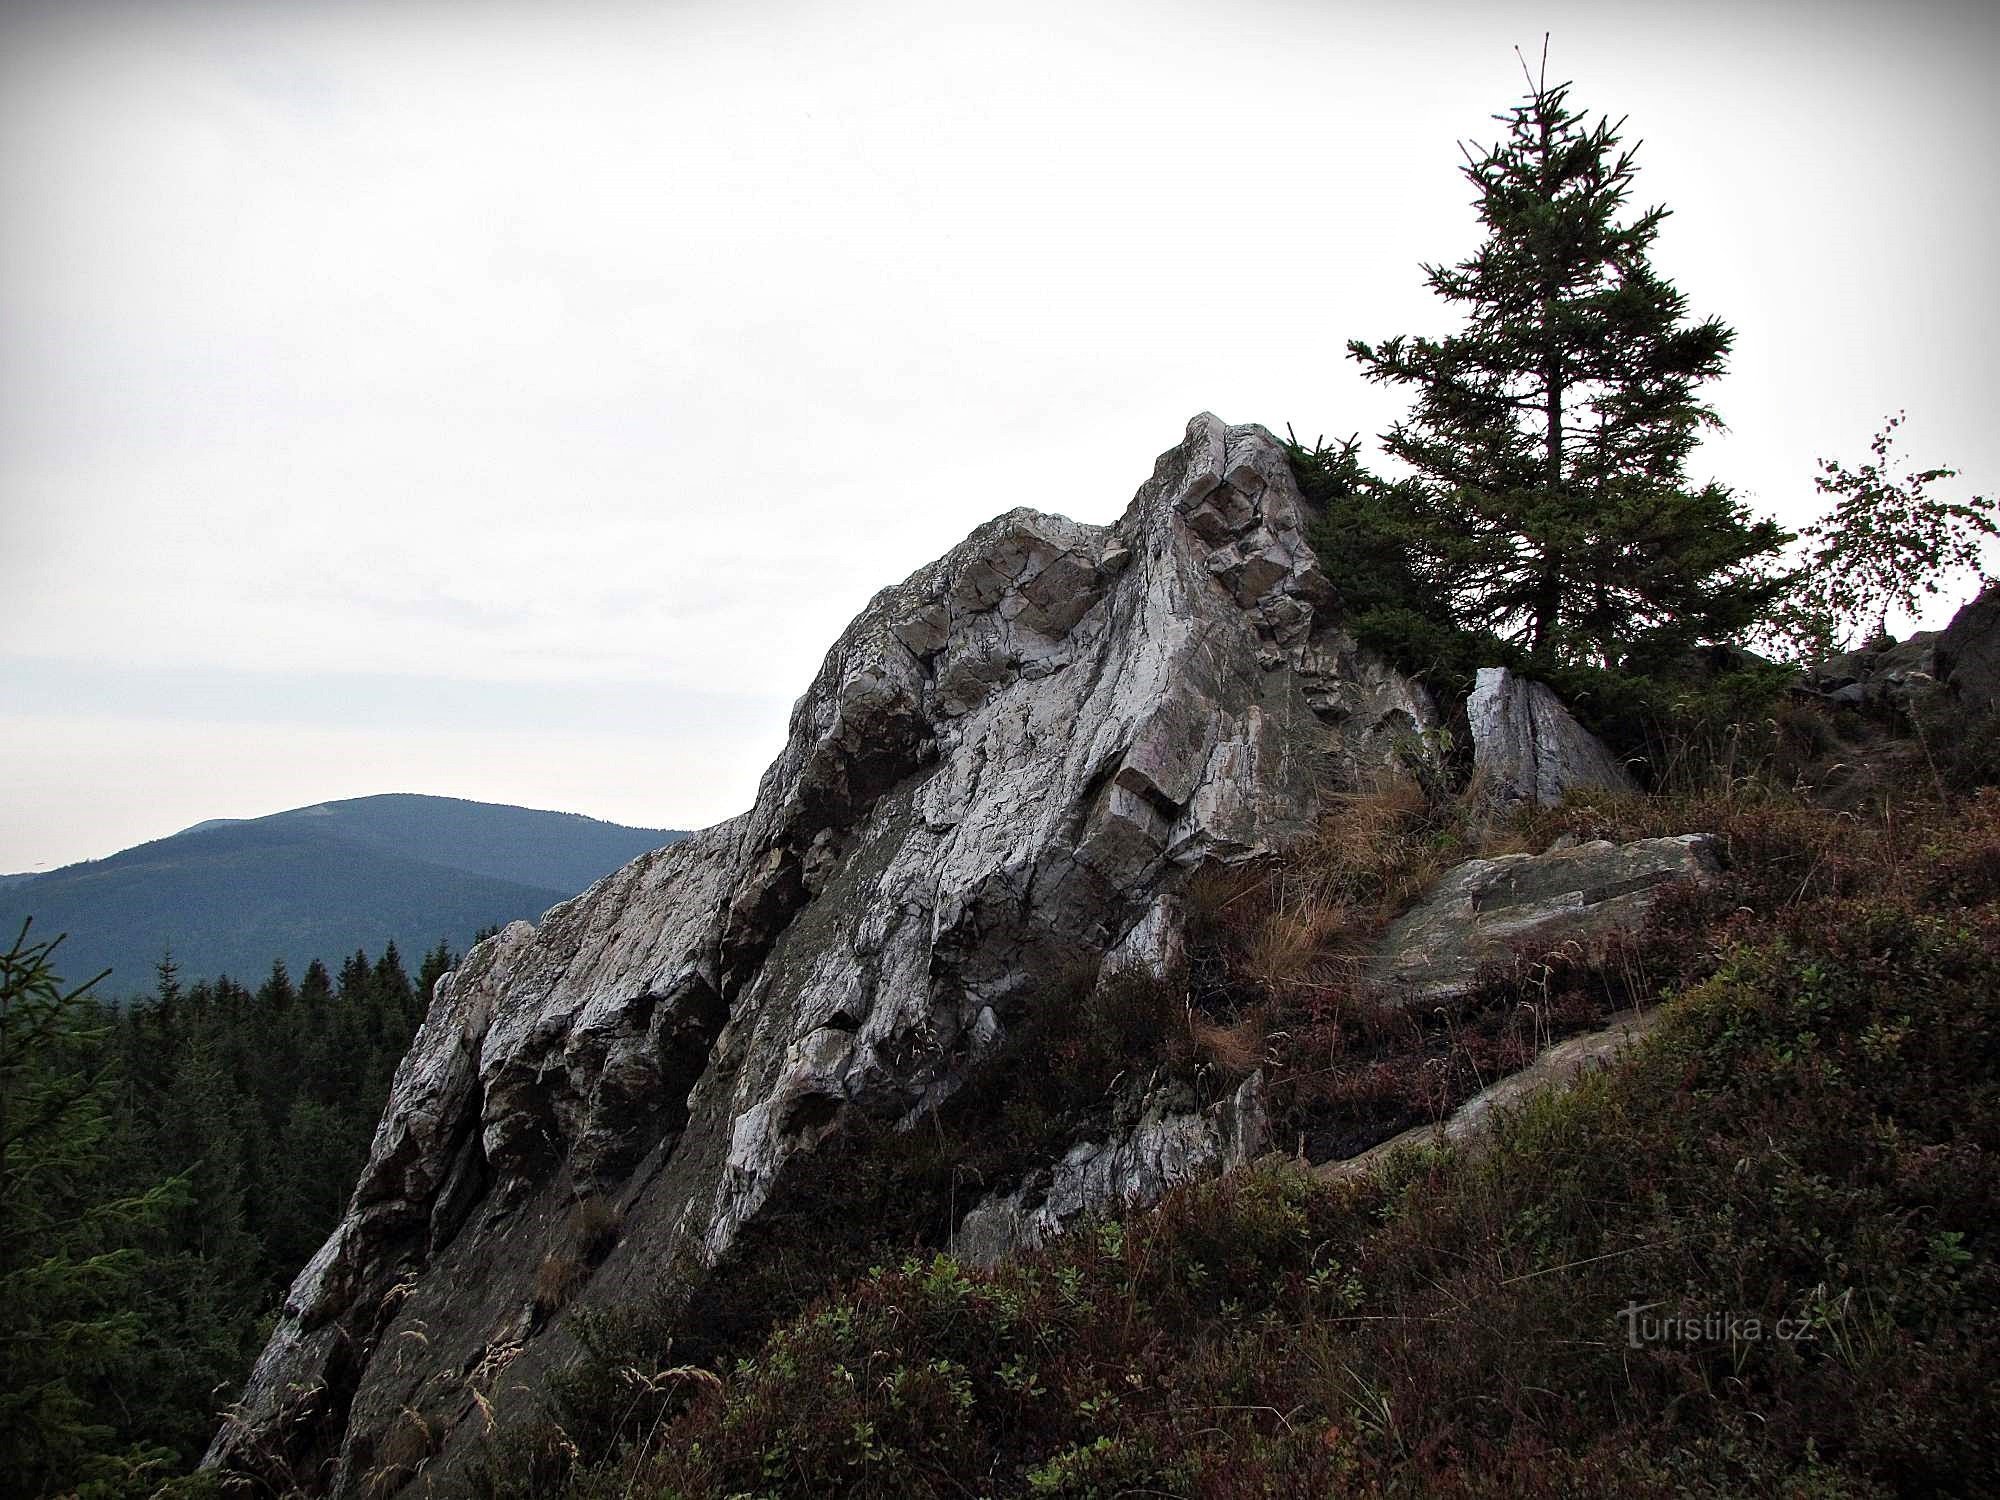 Jesenice rock viewpoints - 1. Vit sten